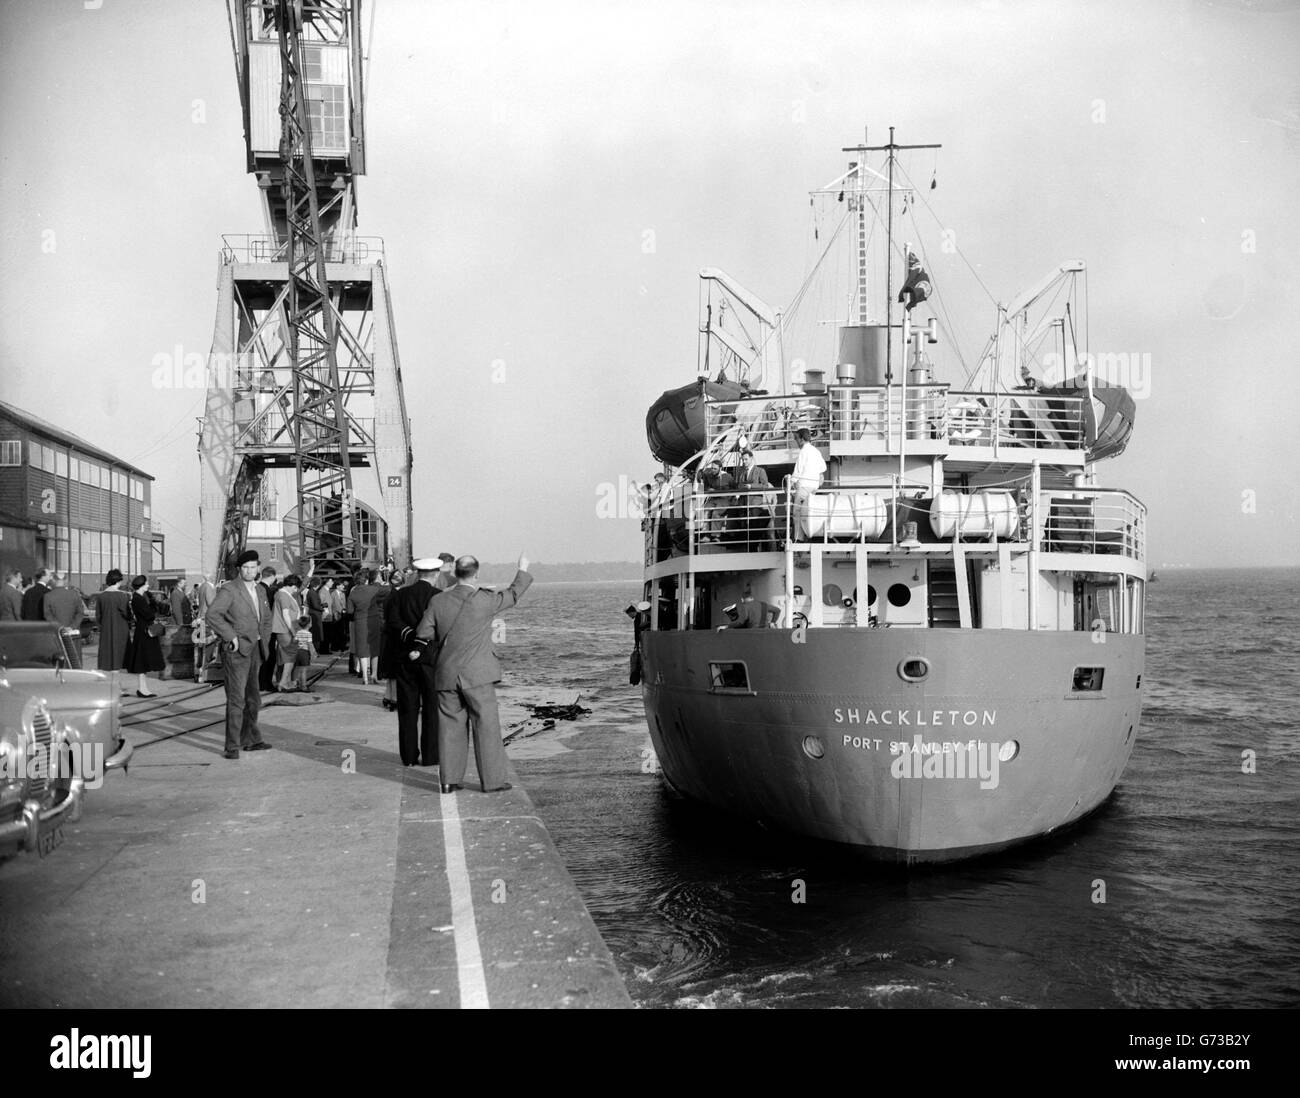 Le Shackleton laisse pour l'Anatarctic. Le navire de recherche royal Shackleton quitte Southampton pour son voyage de secours annuel en Antarctique, avec du personnel et des fournitures pour l'enquête sur les dépendances des îles Falkland. Banque D'Images